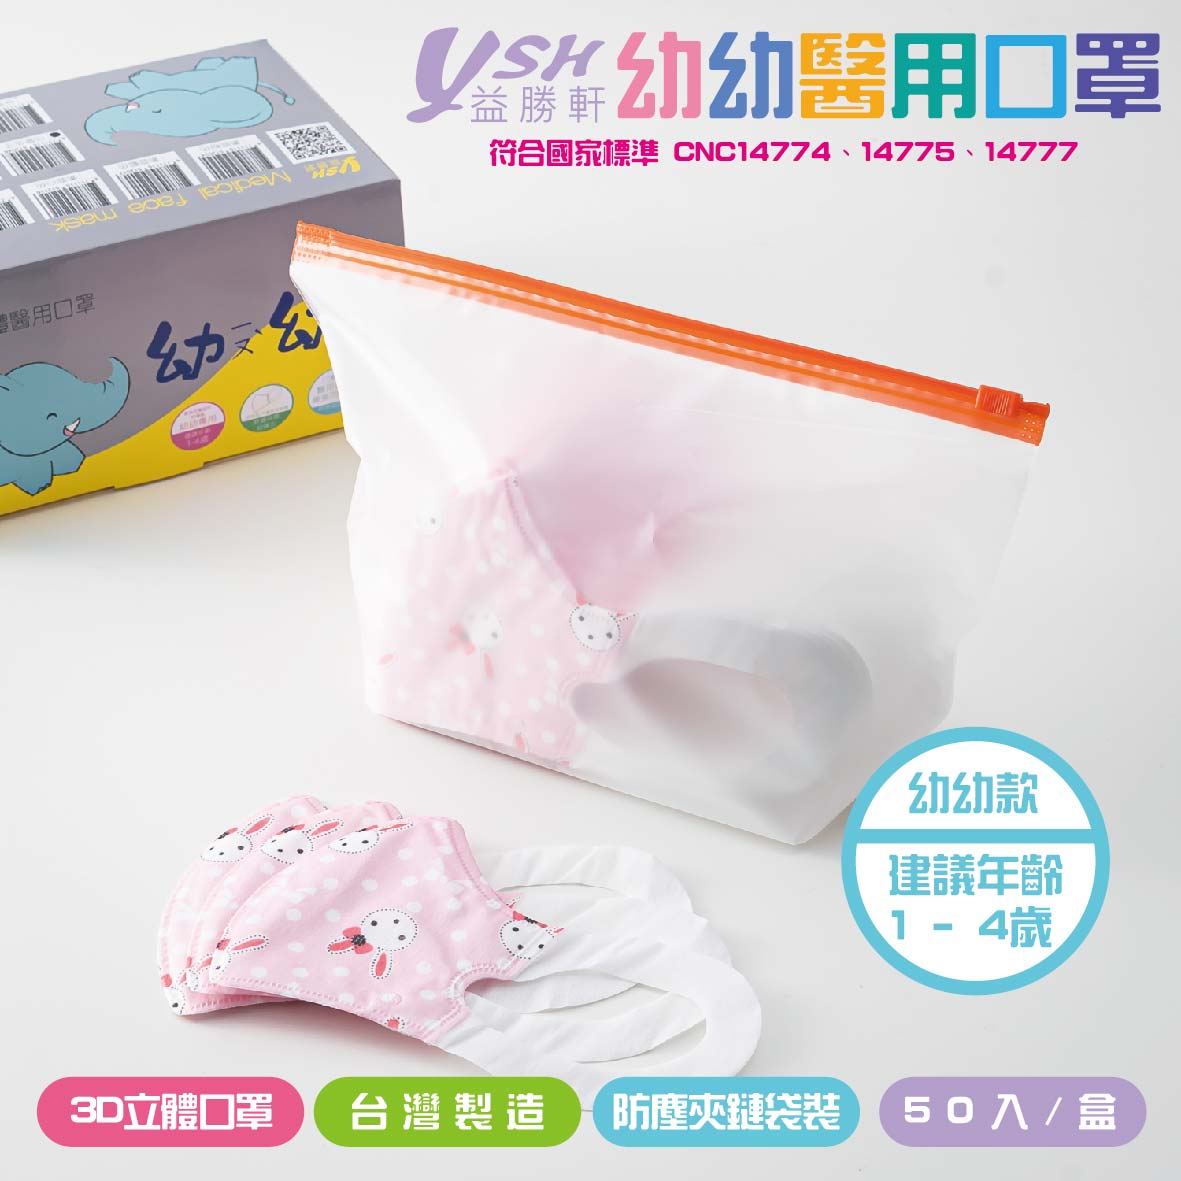 【快速出貨】益勝軒 幼幼3D立體醫療口罩  MIT台灣製 50入/盒  1~4歲  附防塵夾鏈袋包裝 7